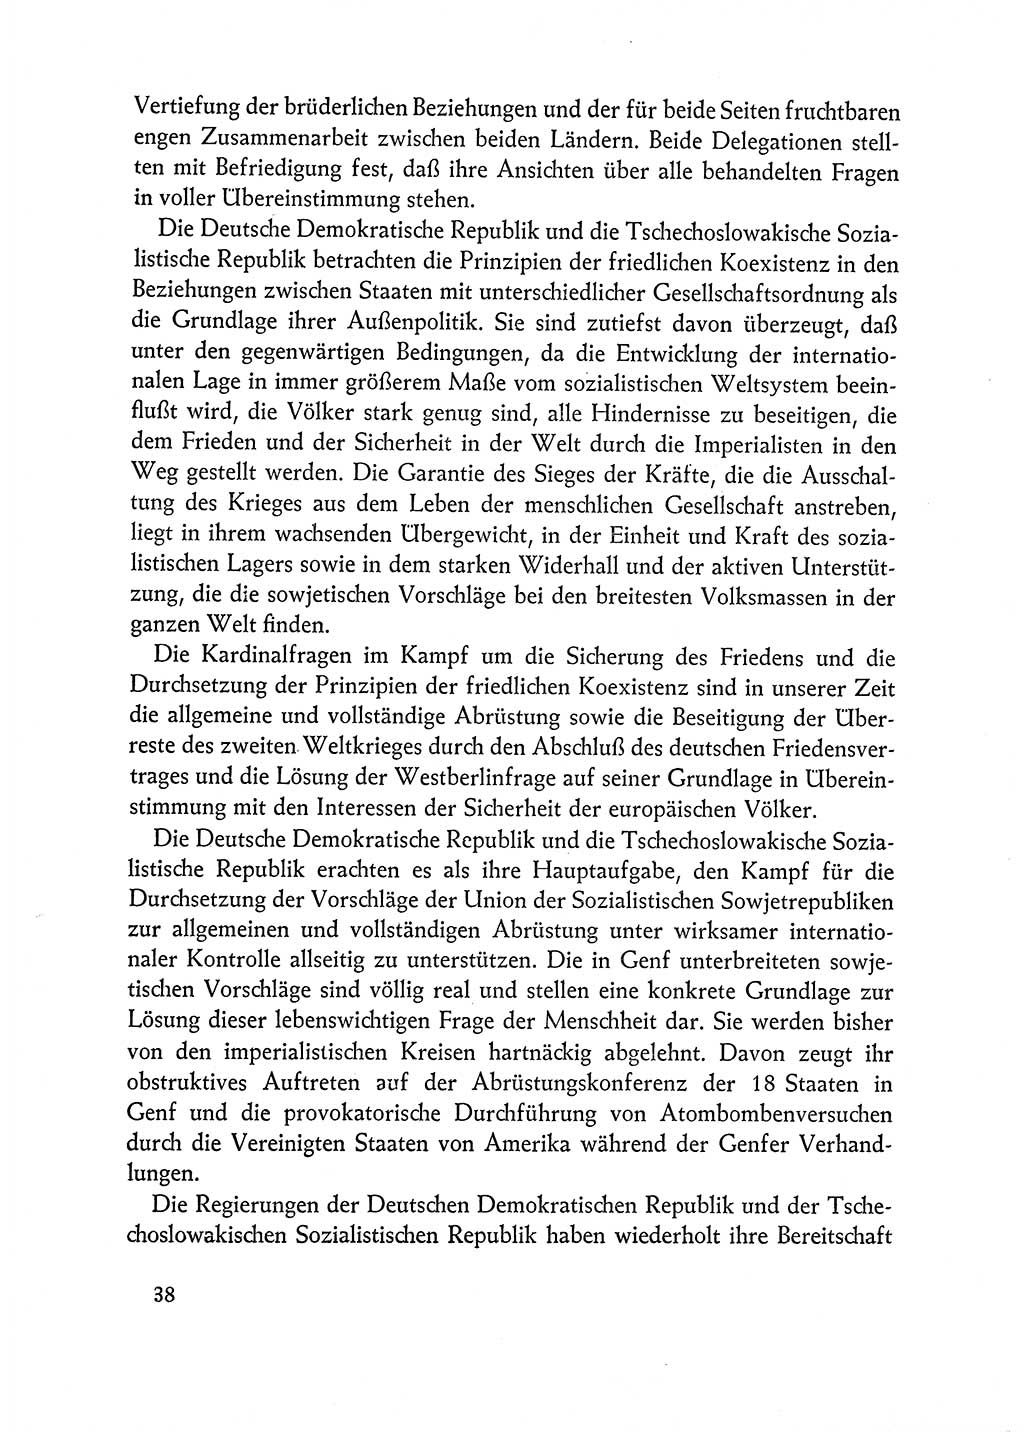 Dokumente der Sozialistischen Einheitspartei Deutschlands (SED) [Deutsche Demokratische Republik (DDR)] 1962-1963, Seite 38 (Dok. SED DDR 1962-1963, S. 38)